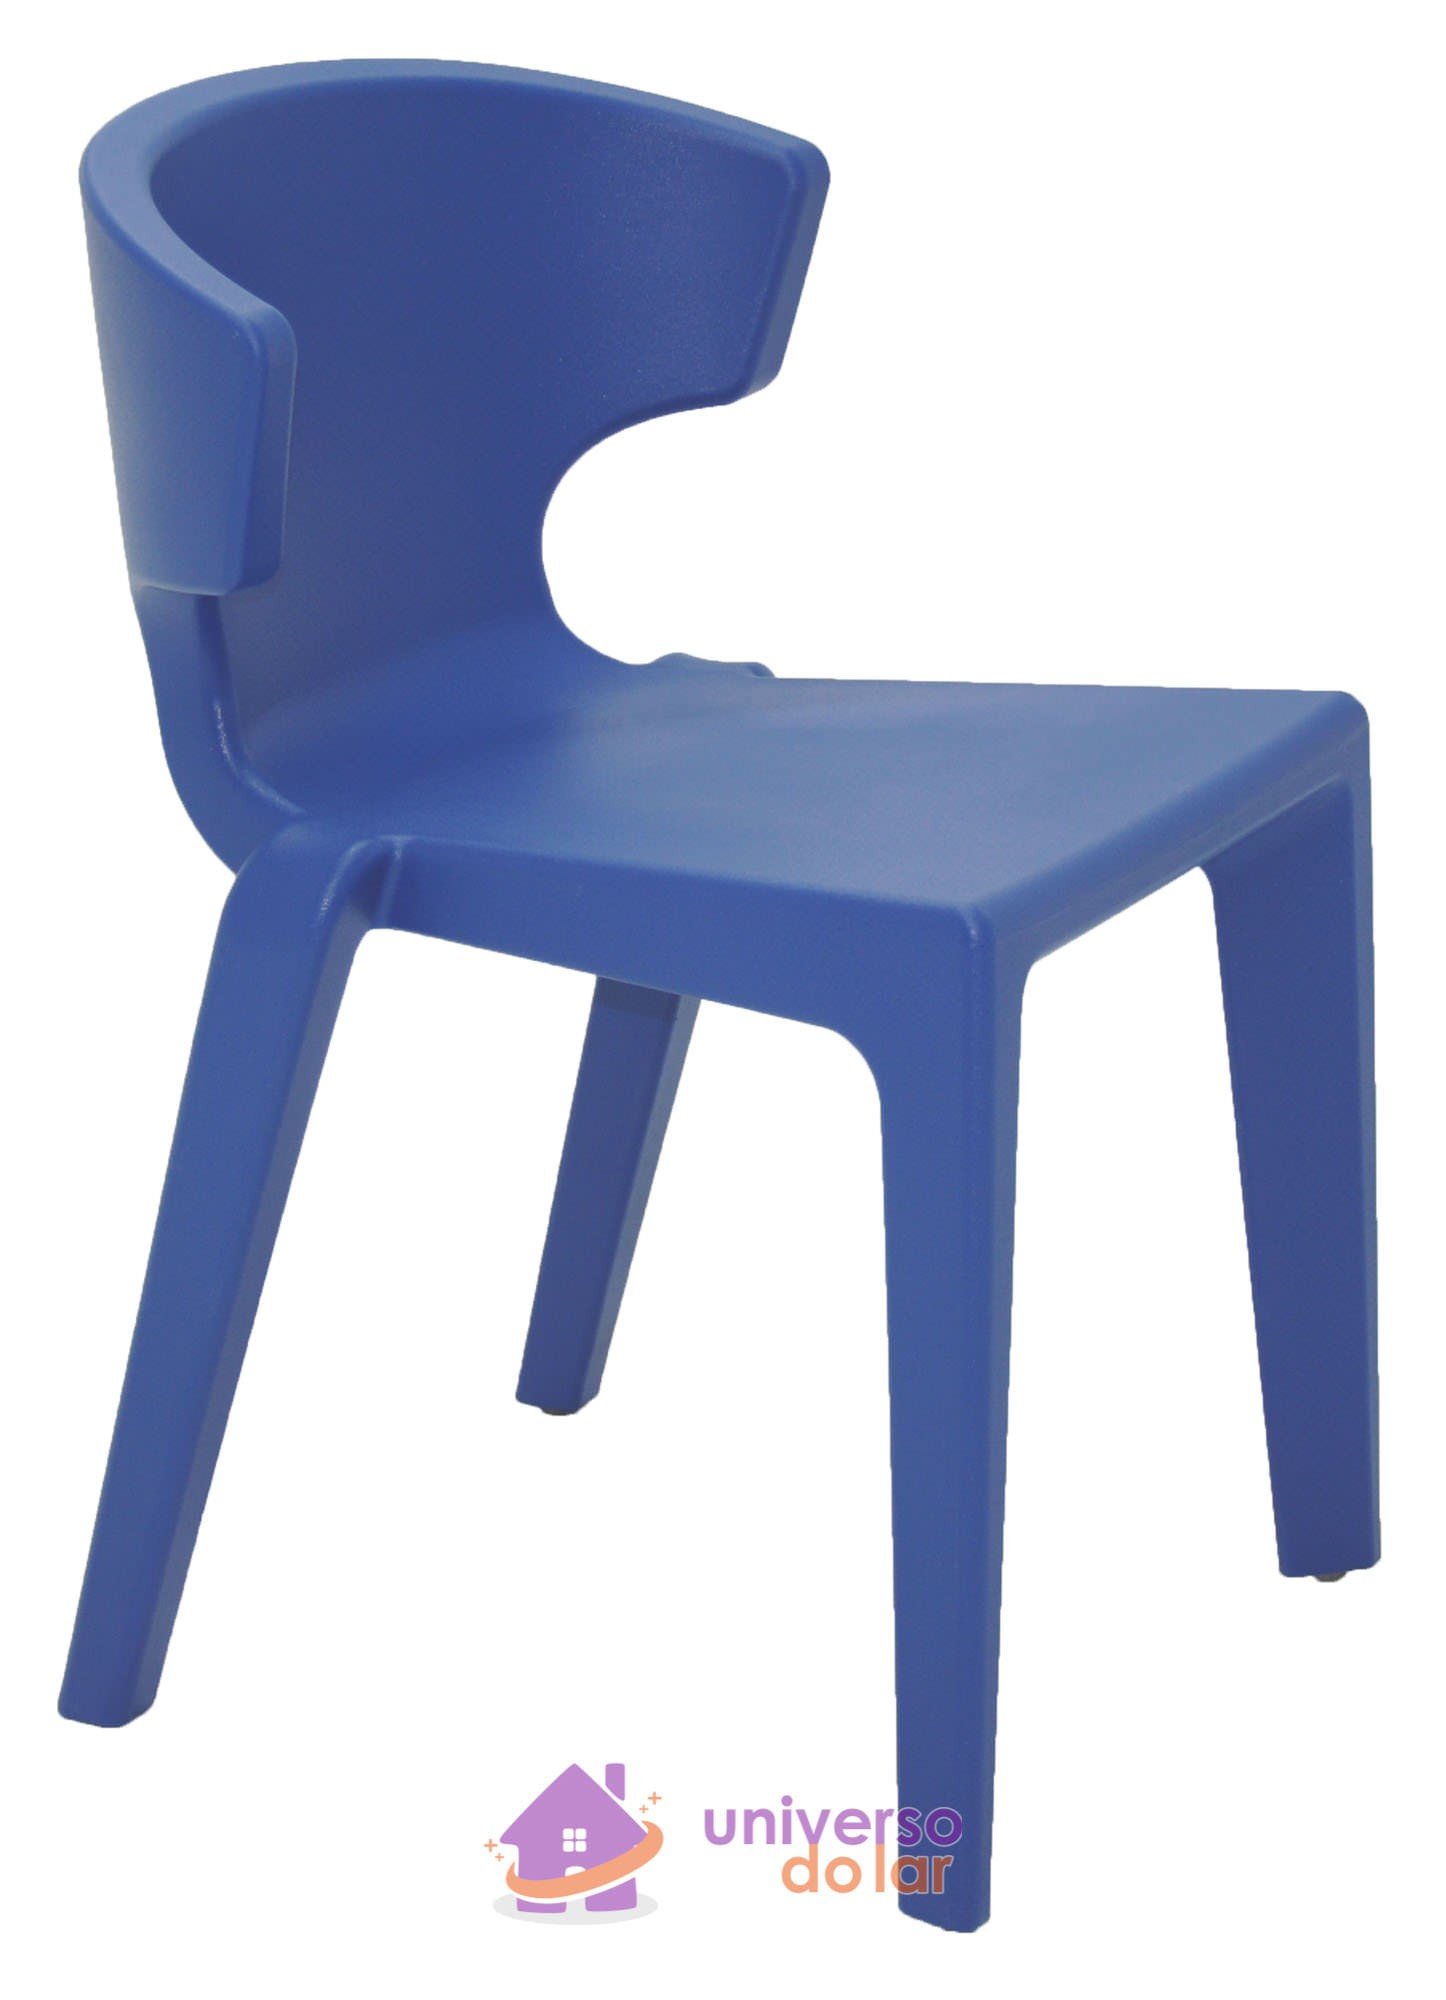 Cadeira Marilyn Mariner em Polietileno sem Braços